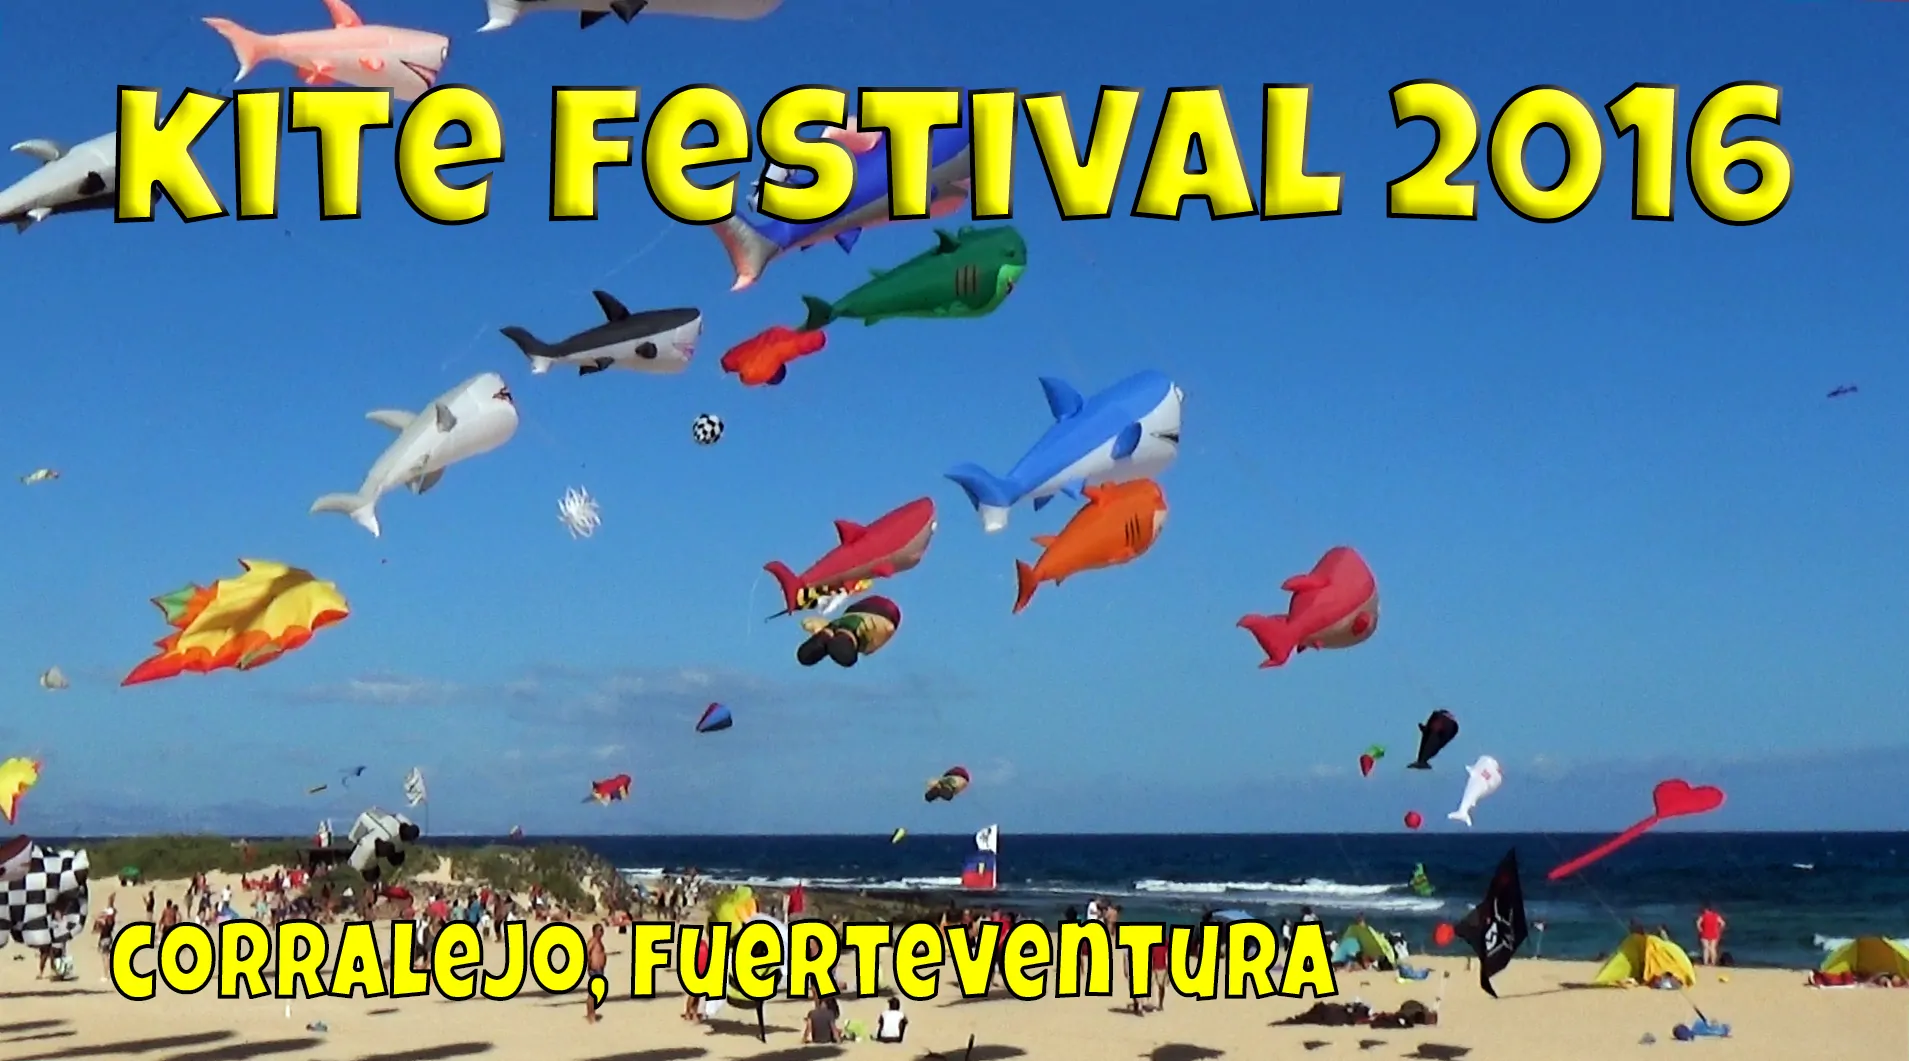 Fuerteventura Kite Festival 2016